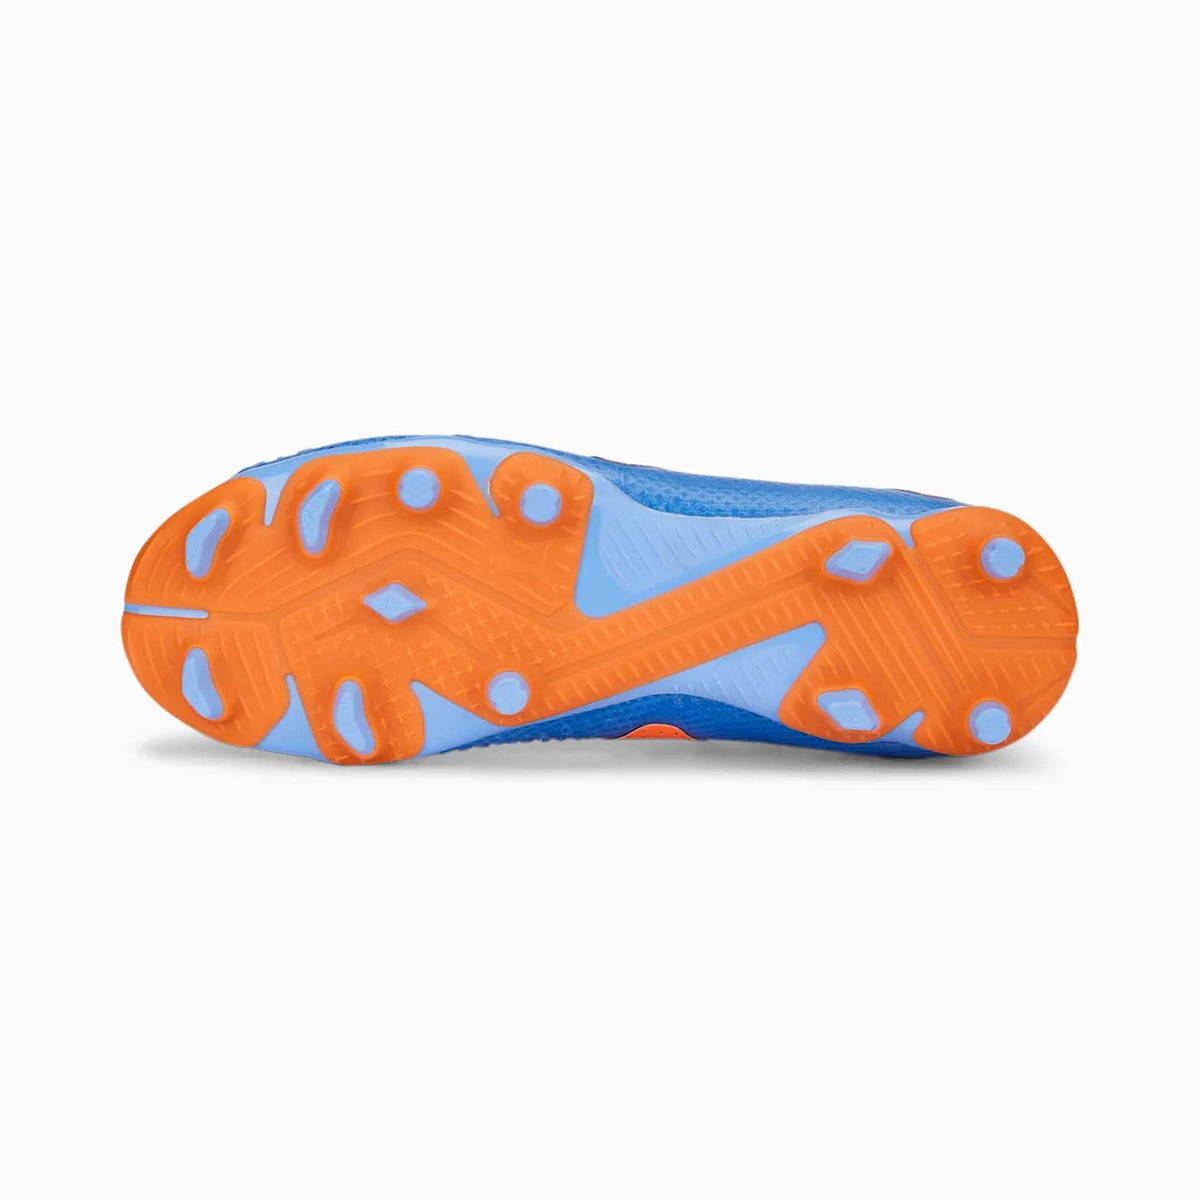 Puma Future Pro FG/AG chaussures de soccer à crampons enfant semelle- blue glimmer white orange